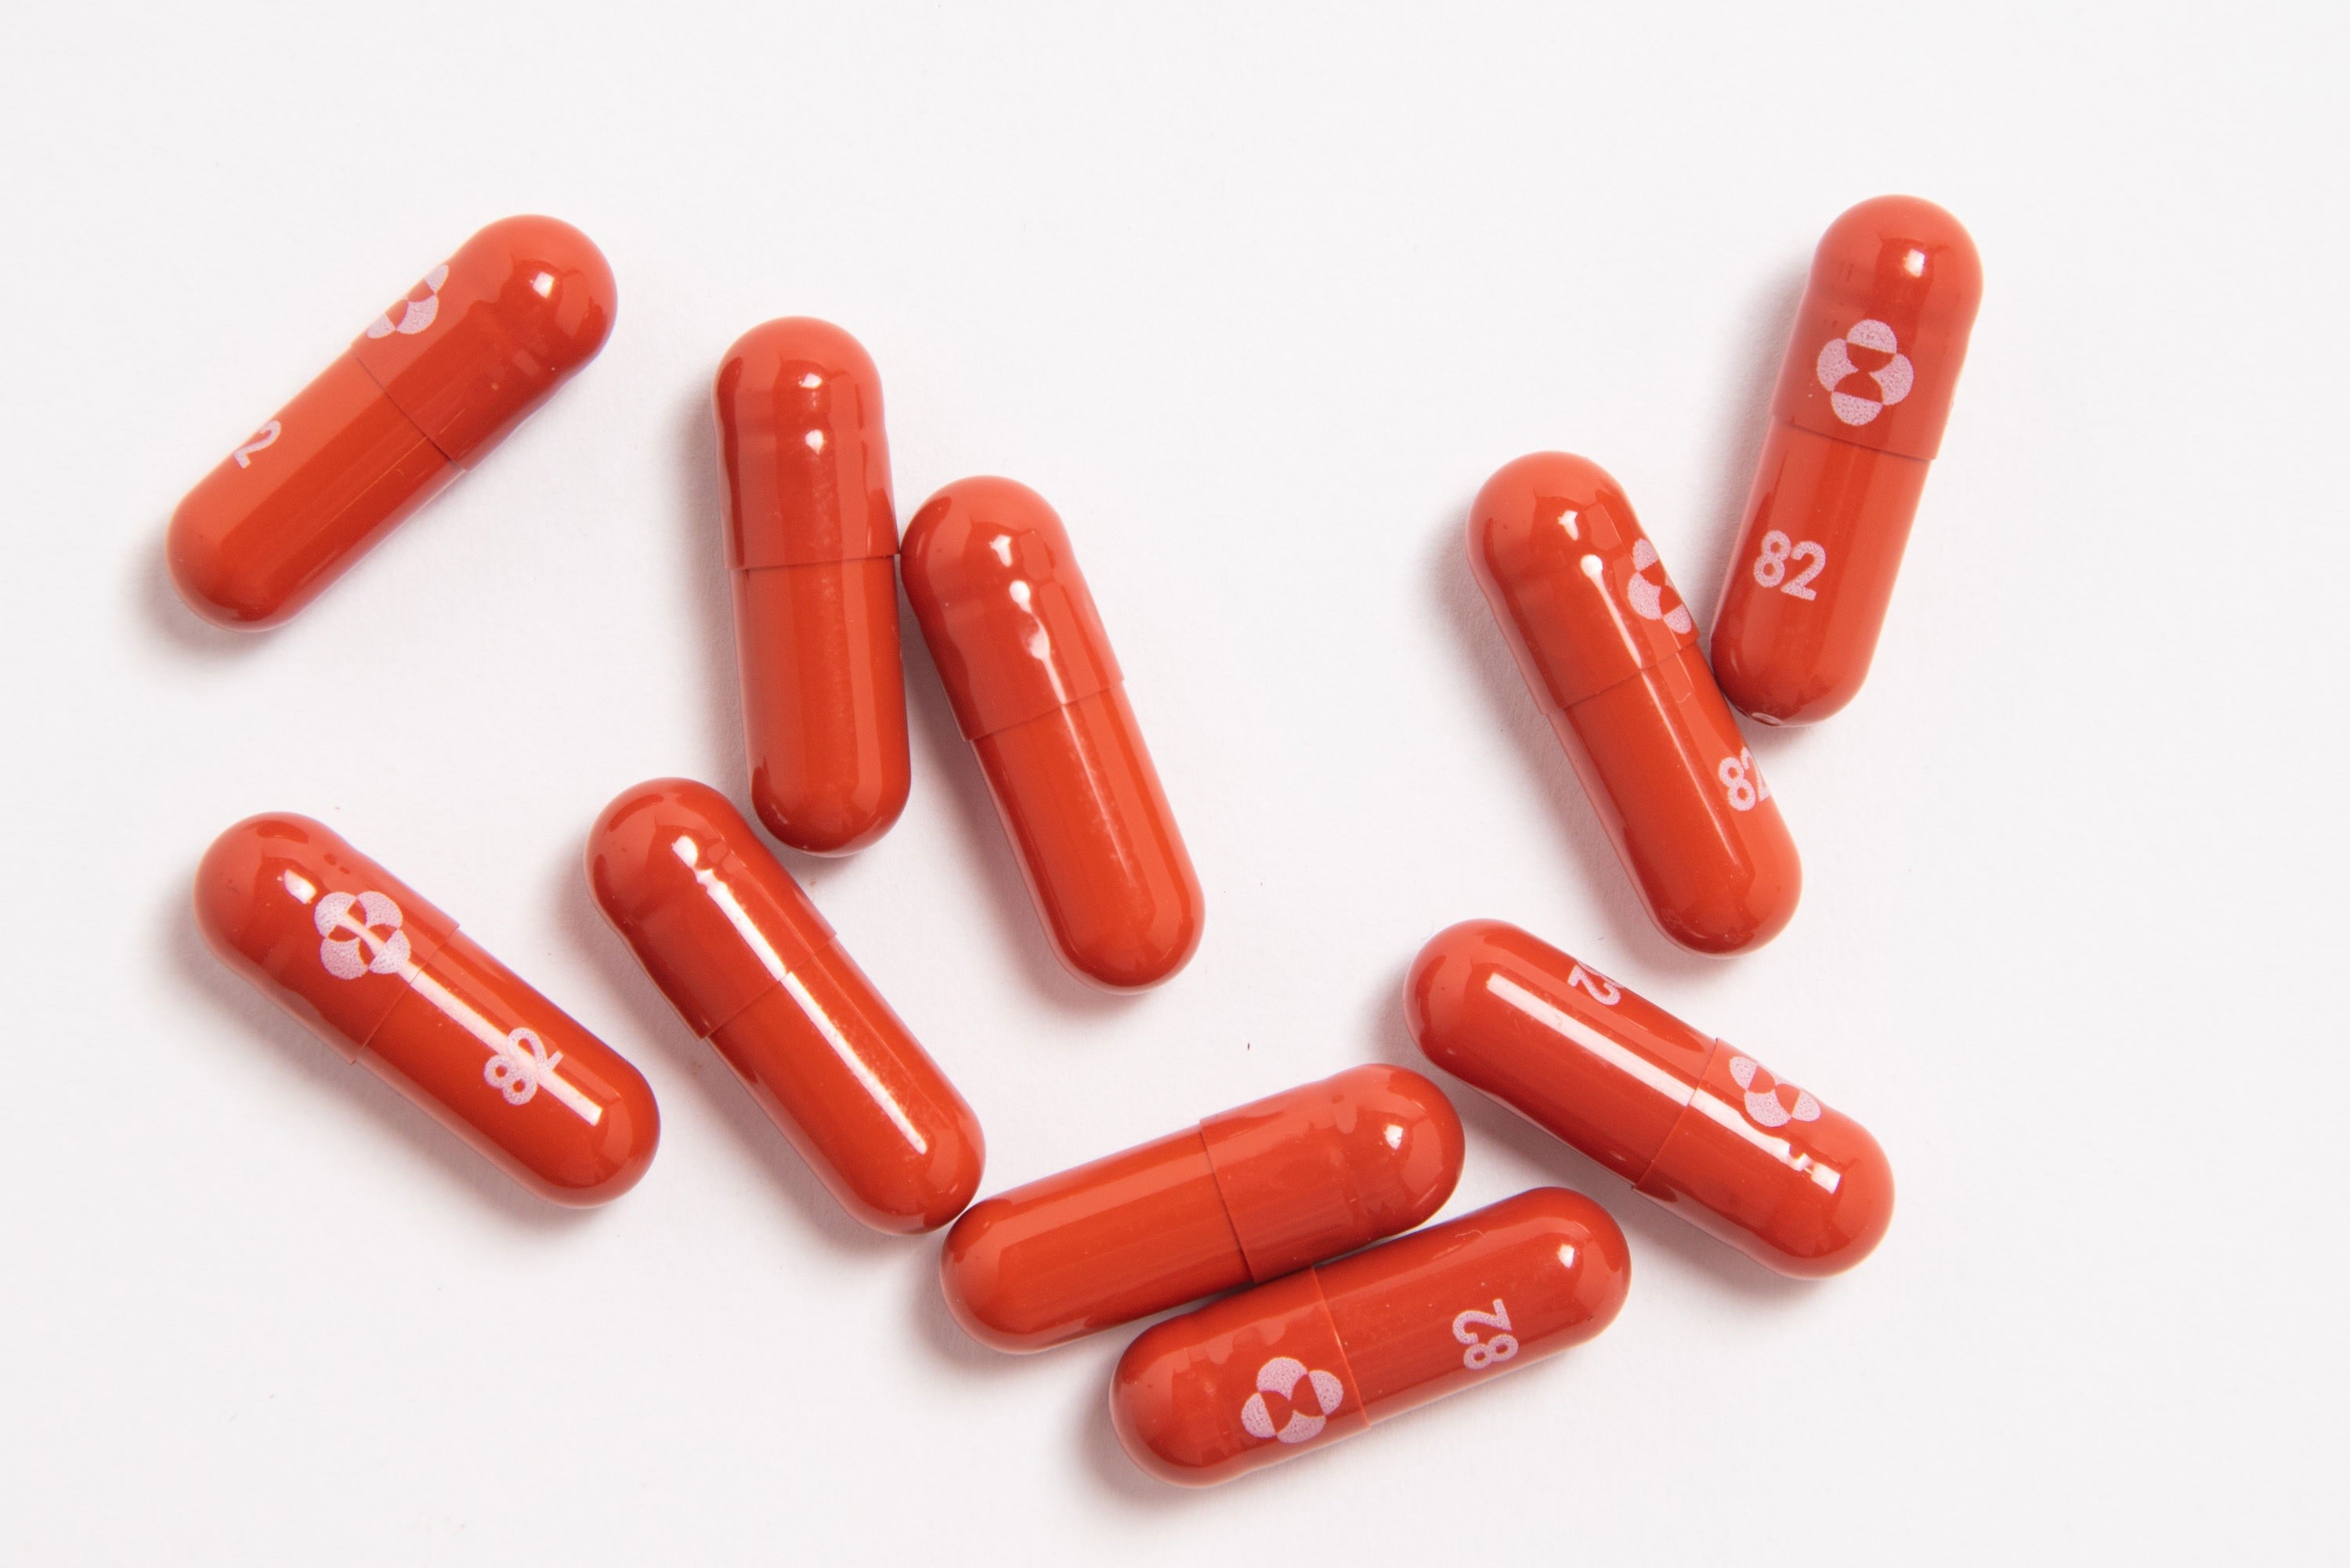 La píldora contra el COVID-19 de las compañías biofarmacéuticas Merck & Co. y Ridgeback Biotherapeutics, de Estados Unidos, mostró que actúa contra la variante Ómicron del SARS-CoV-2 (MSD)
